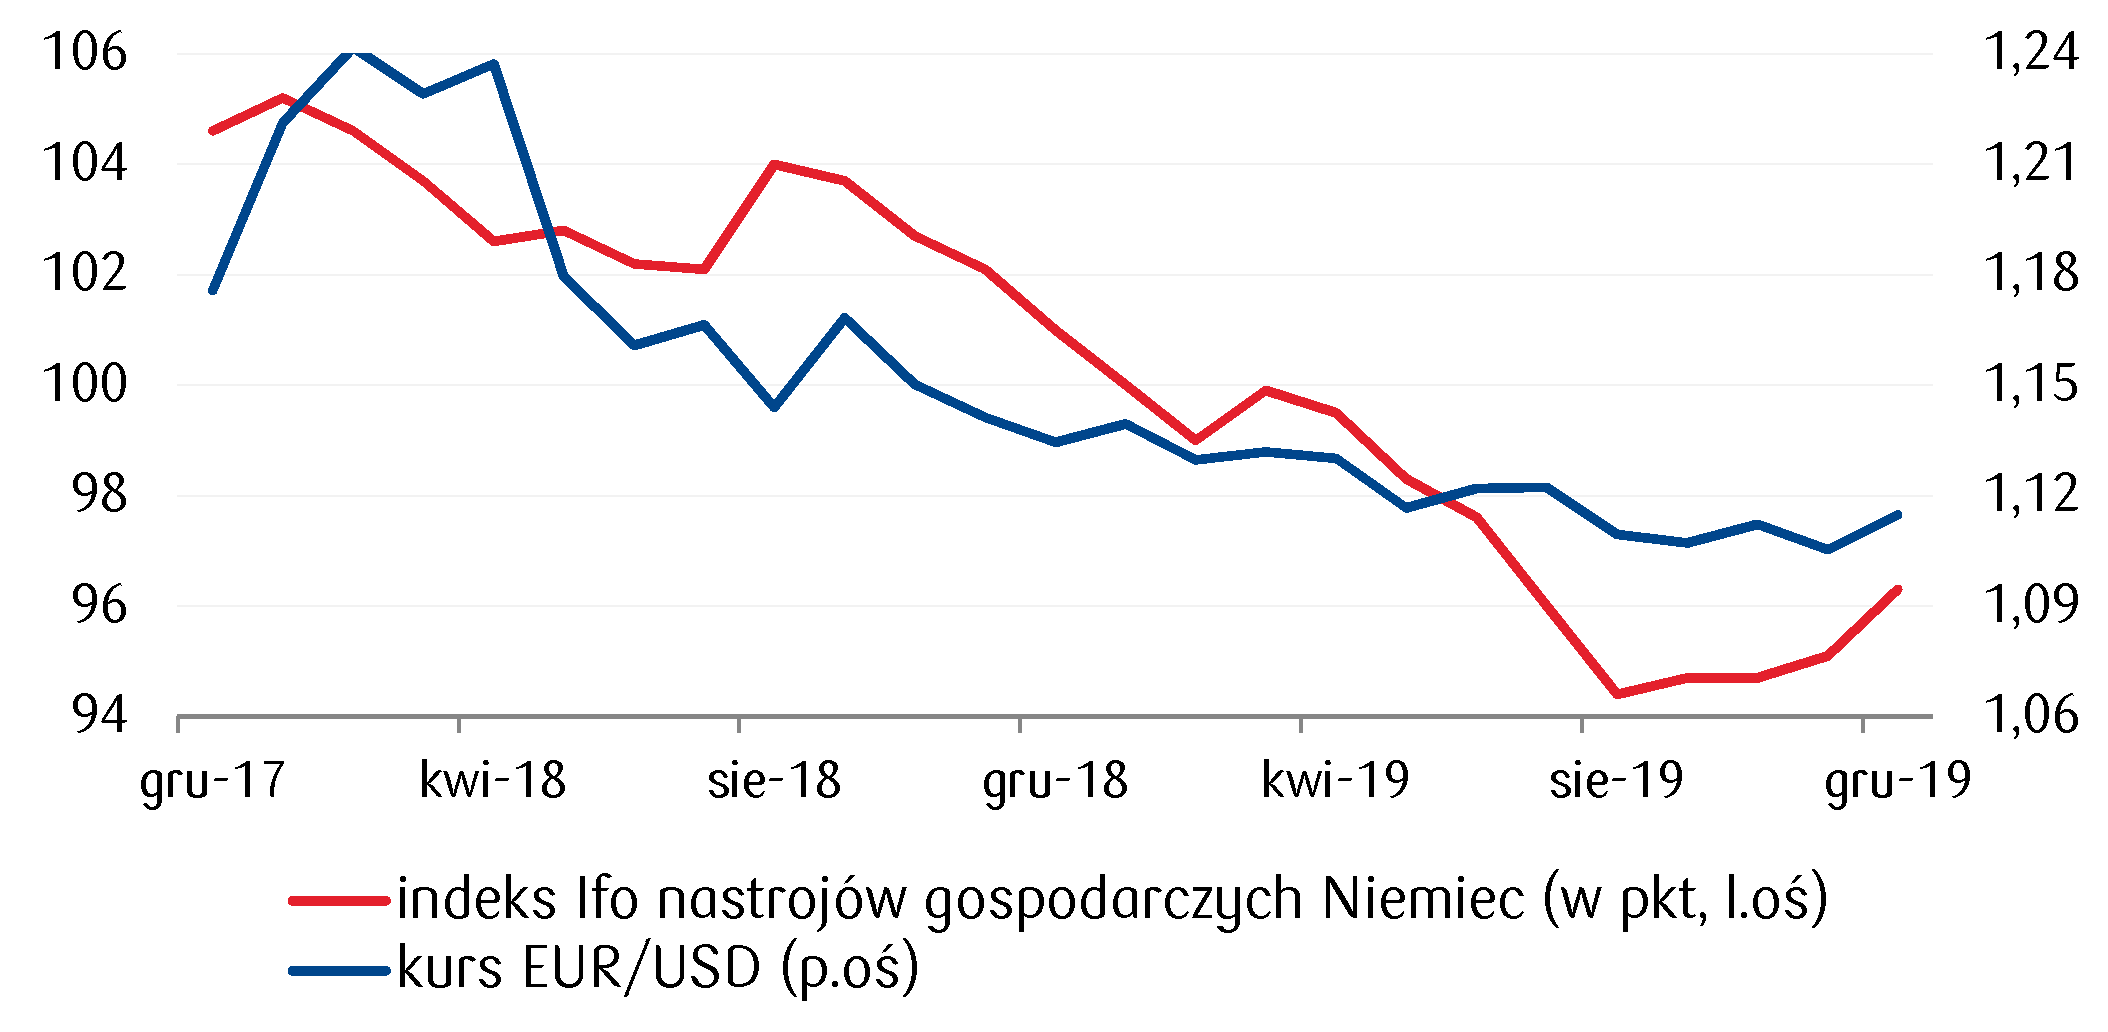 Poprawiające się nastroje gospodarcze w Niemczech wspierają euro względem dolara